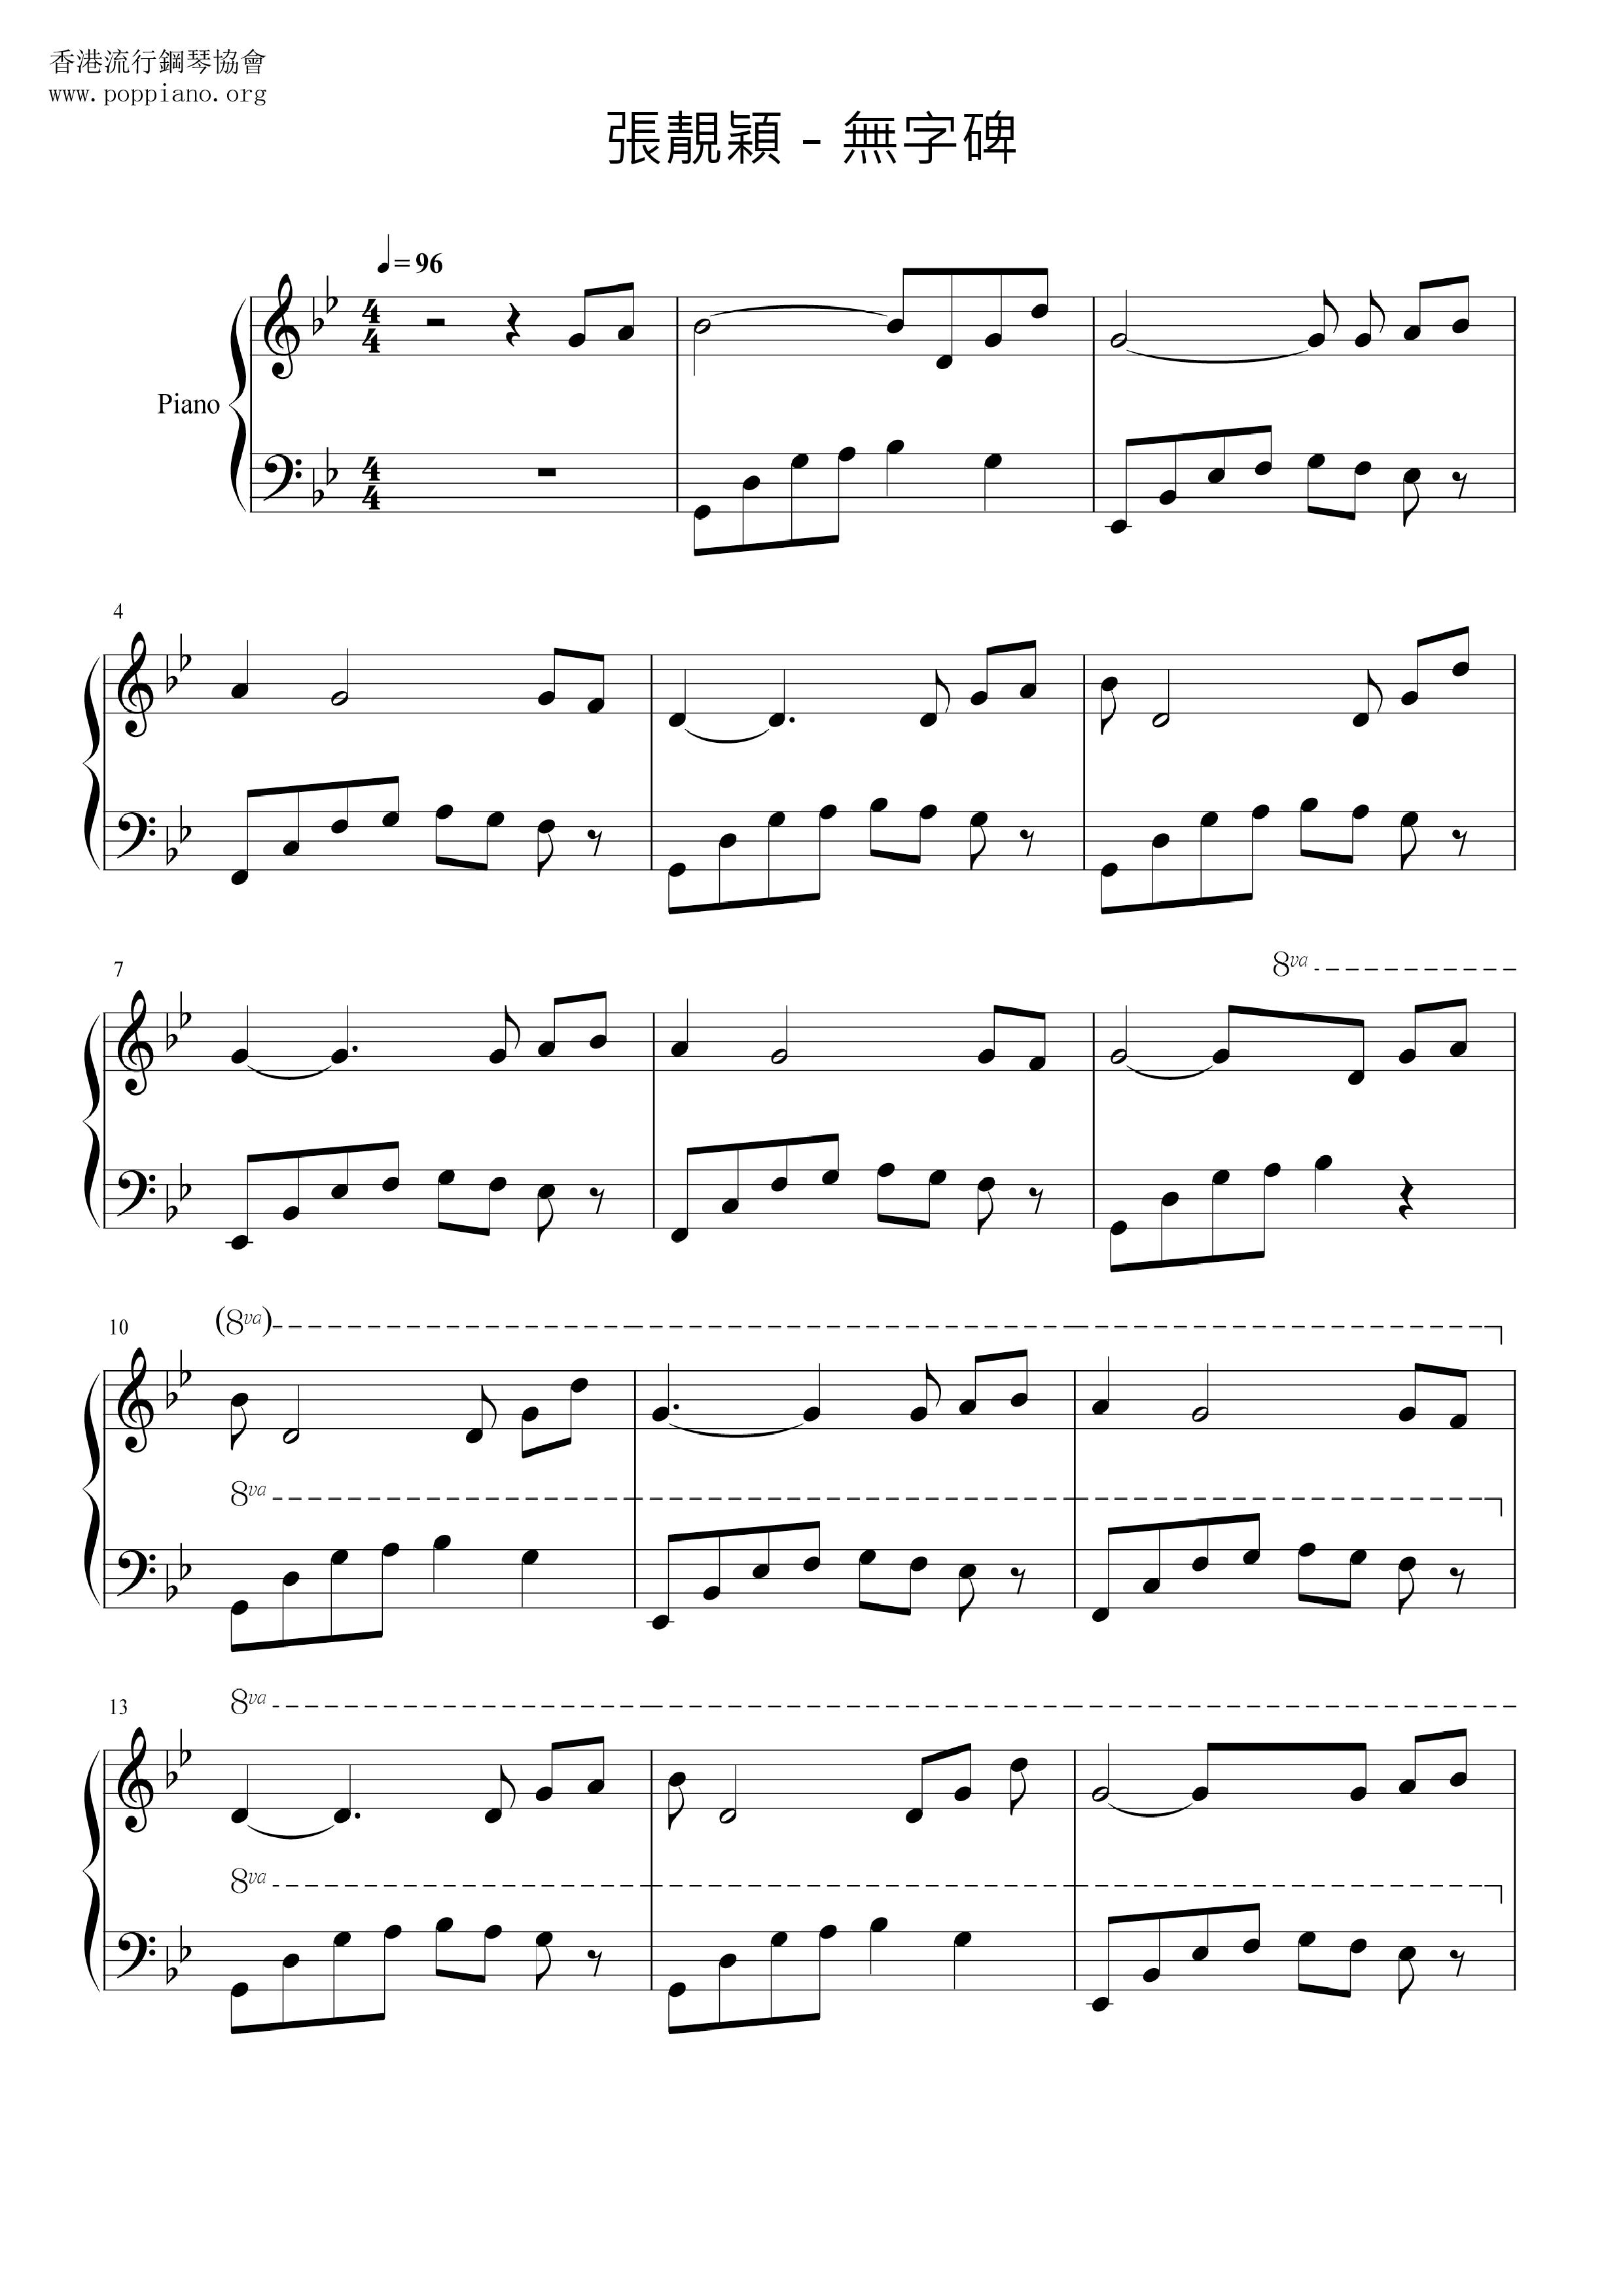 Wuzibei Score